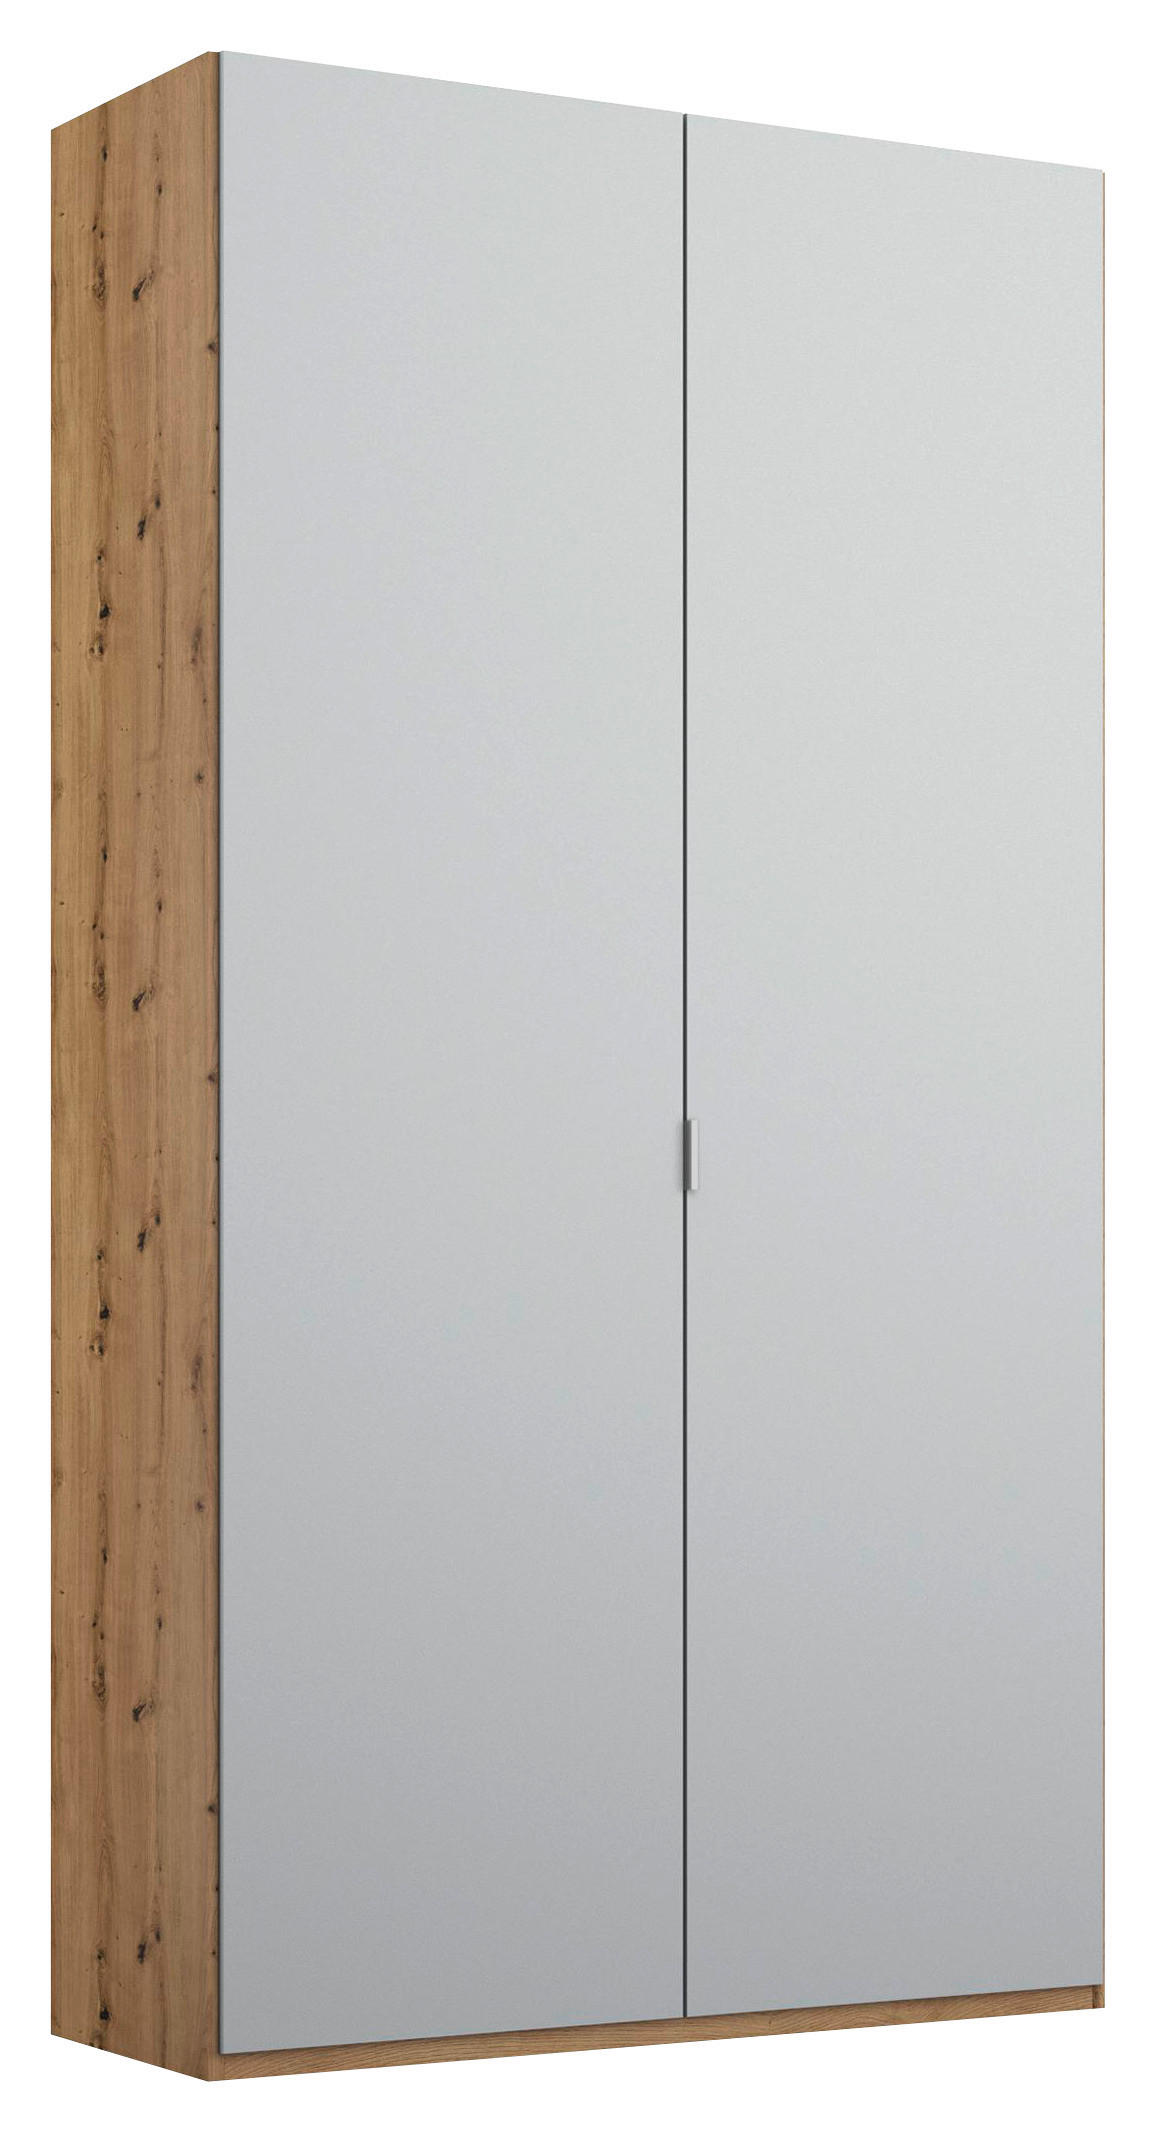 DREHTÜRENSCHRANK 2-türig Grau, Eichefarben  - Eichefarben/Alufarben, Trend, Holzwerkstoff/Metall (101/223/60cm) - Stylife